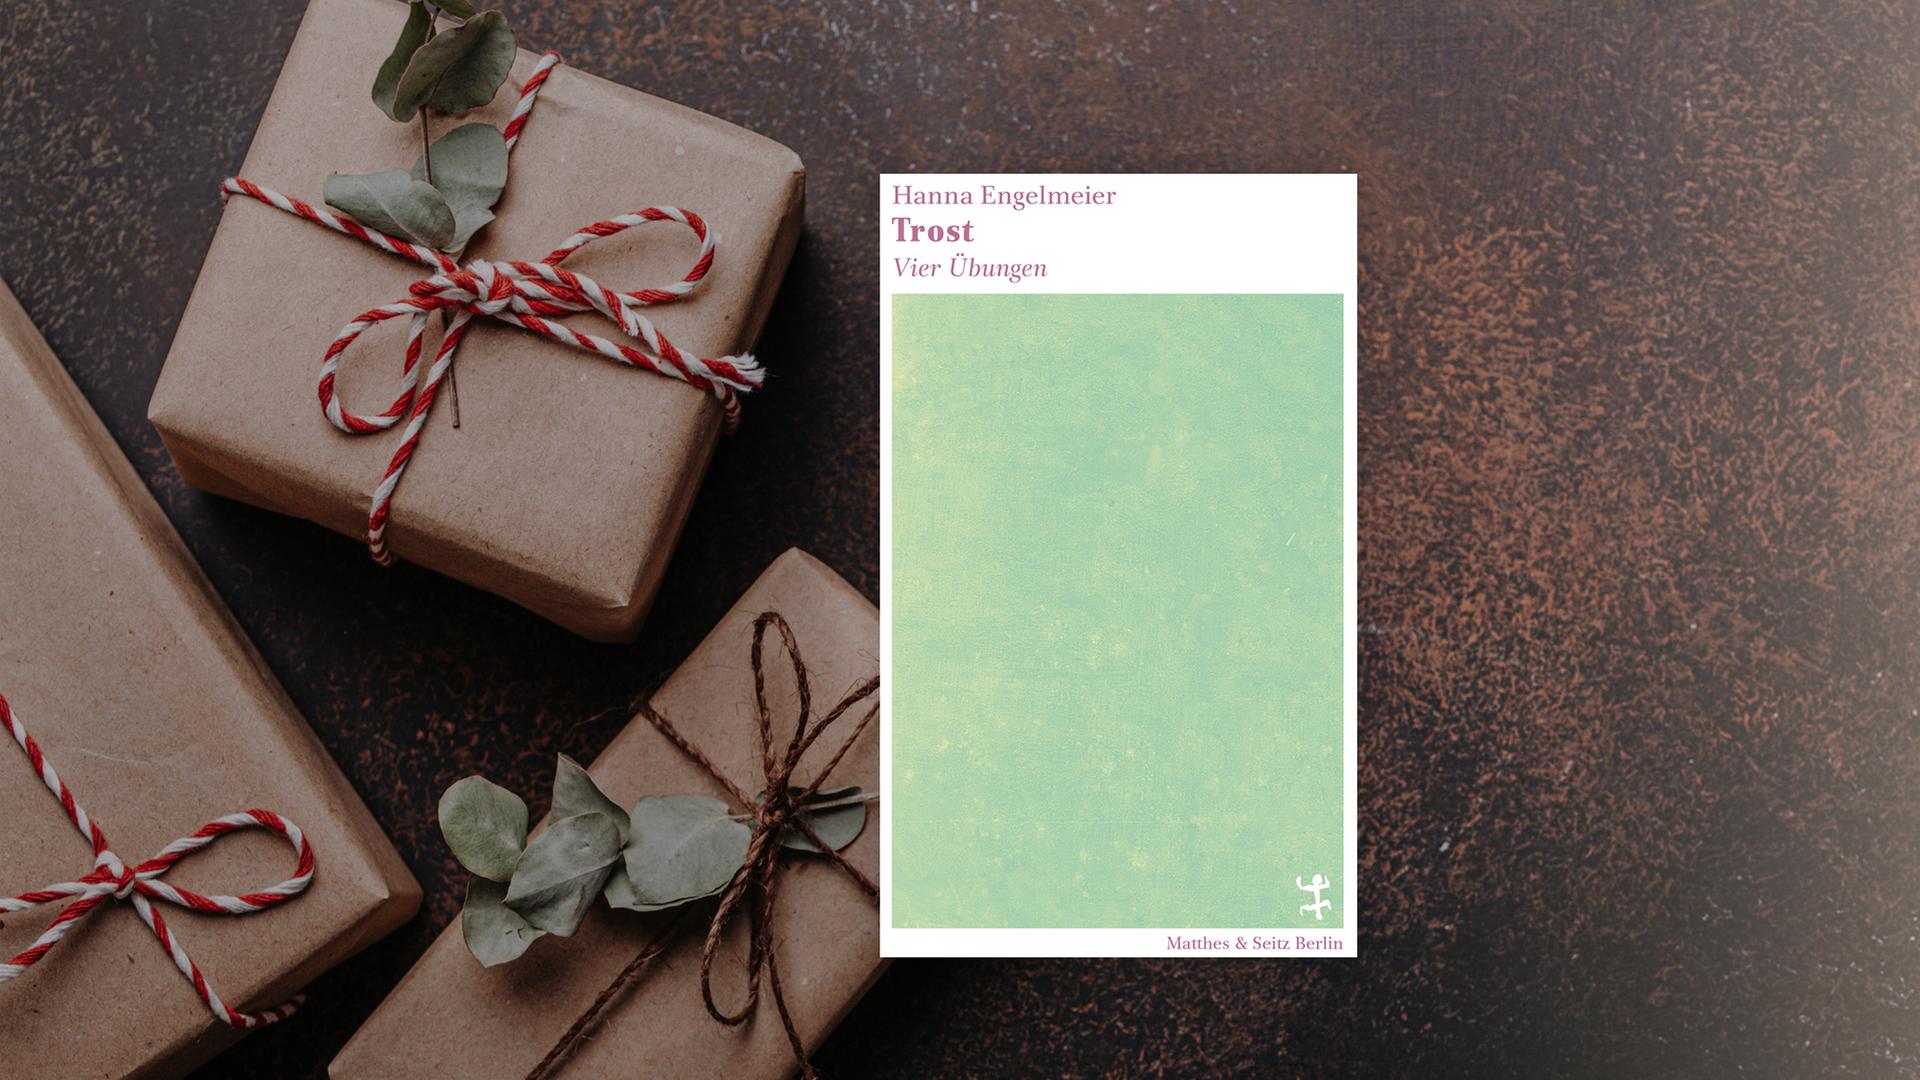 Buchcover "Trost. Vier Übungen" von Hanna Engelmeier auf einem Fotohintergrund, auf dem weihnachtlich verpackte Geschenke zu sehen sind.